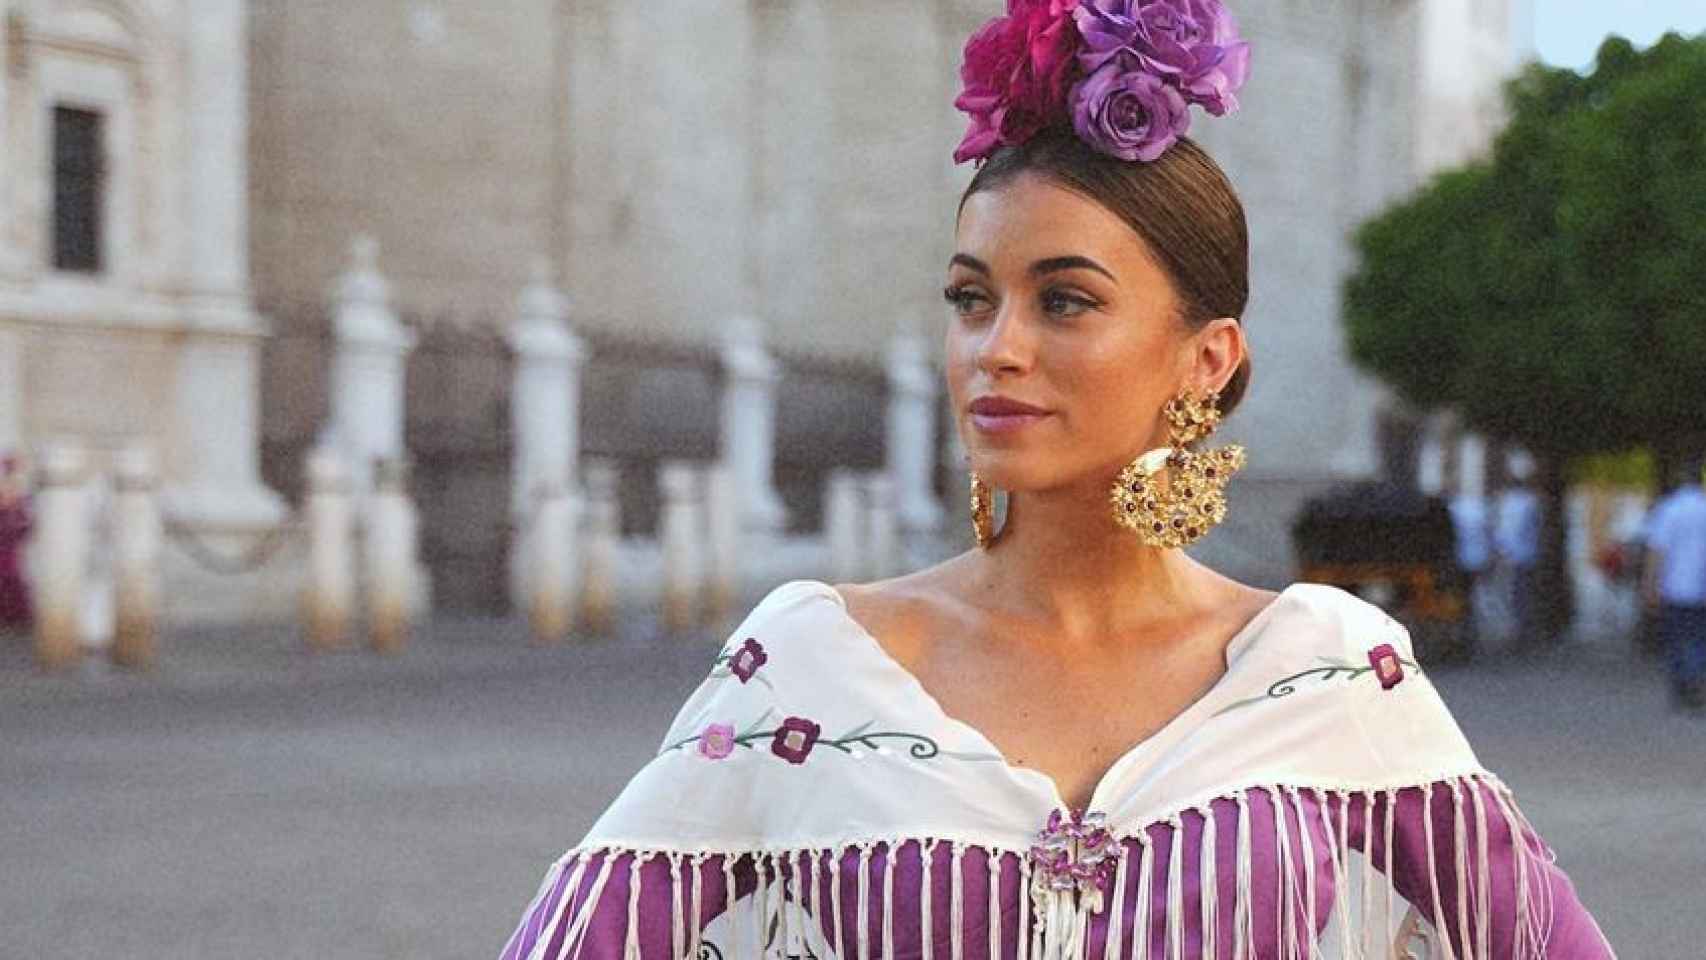 Imágenes del día: Rocío Camacho sigue triunfando vestida de flamenca en la Feria de Sevilla